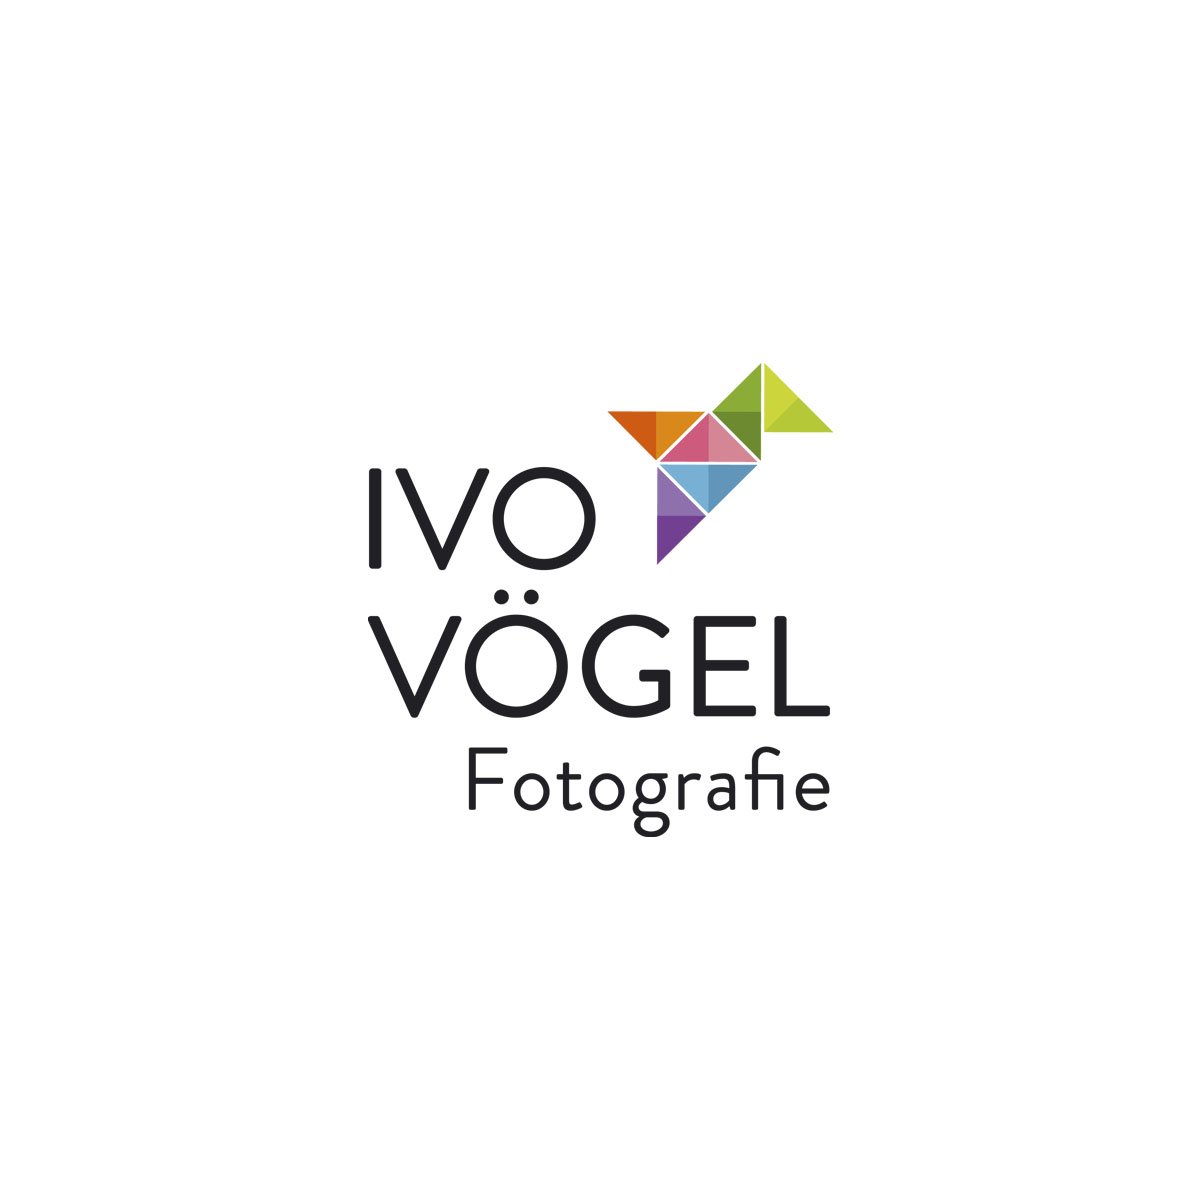 Ivo Vögel Fotografie